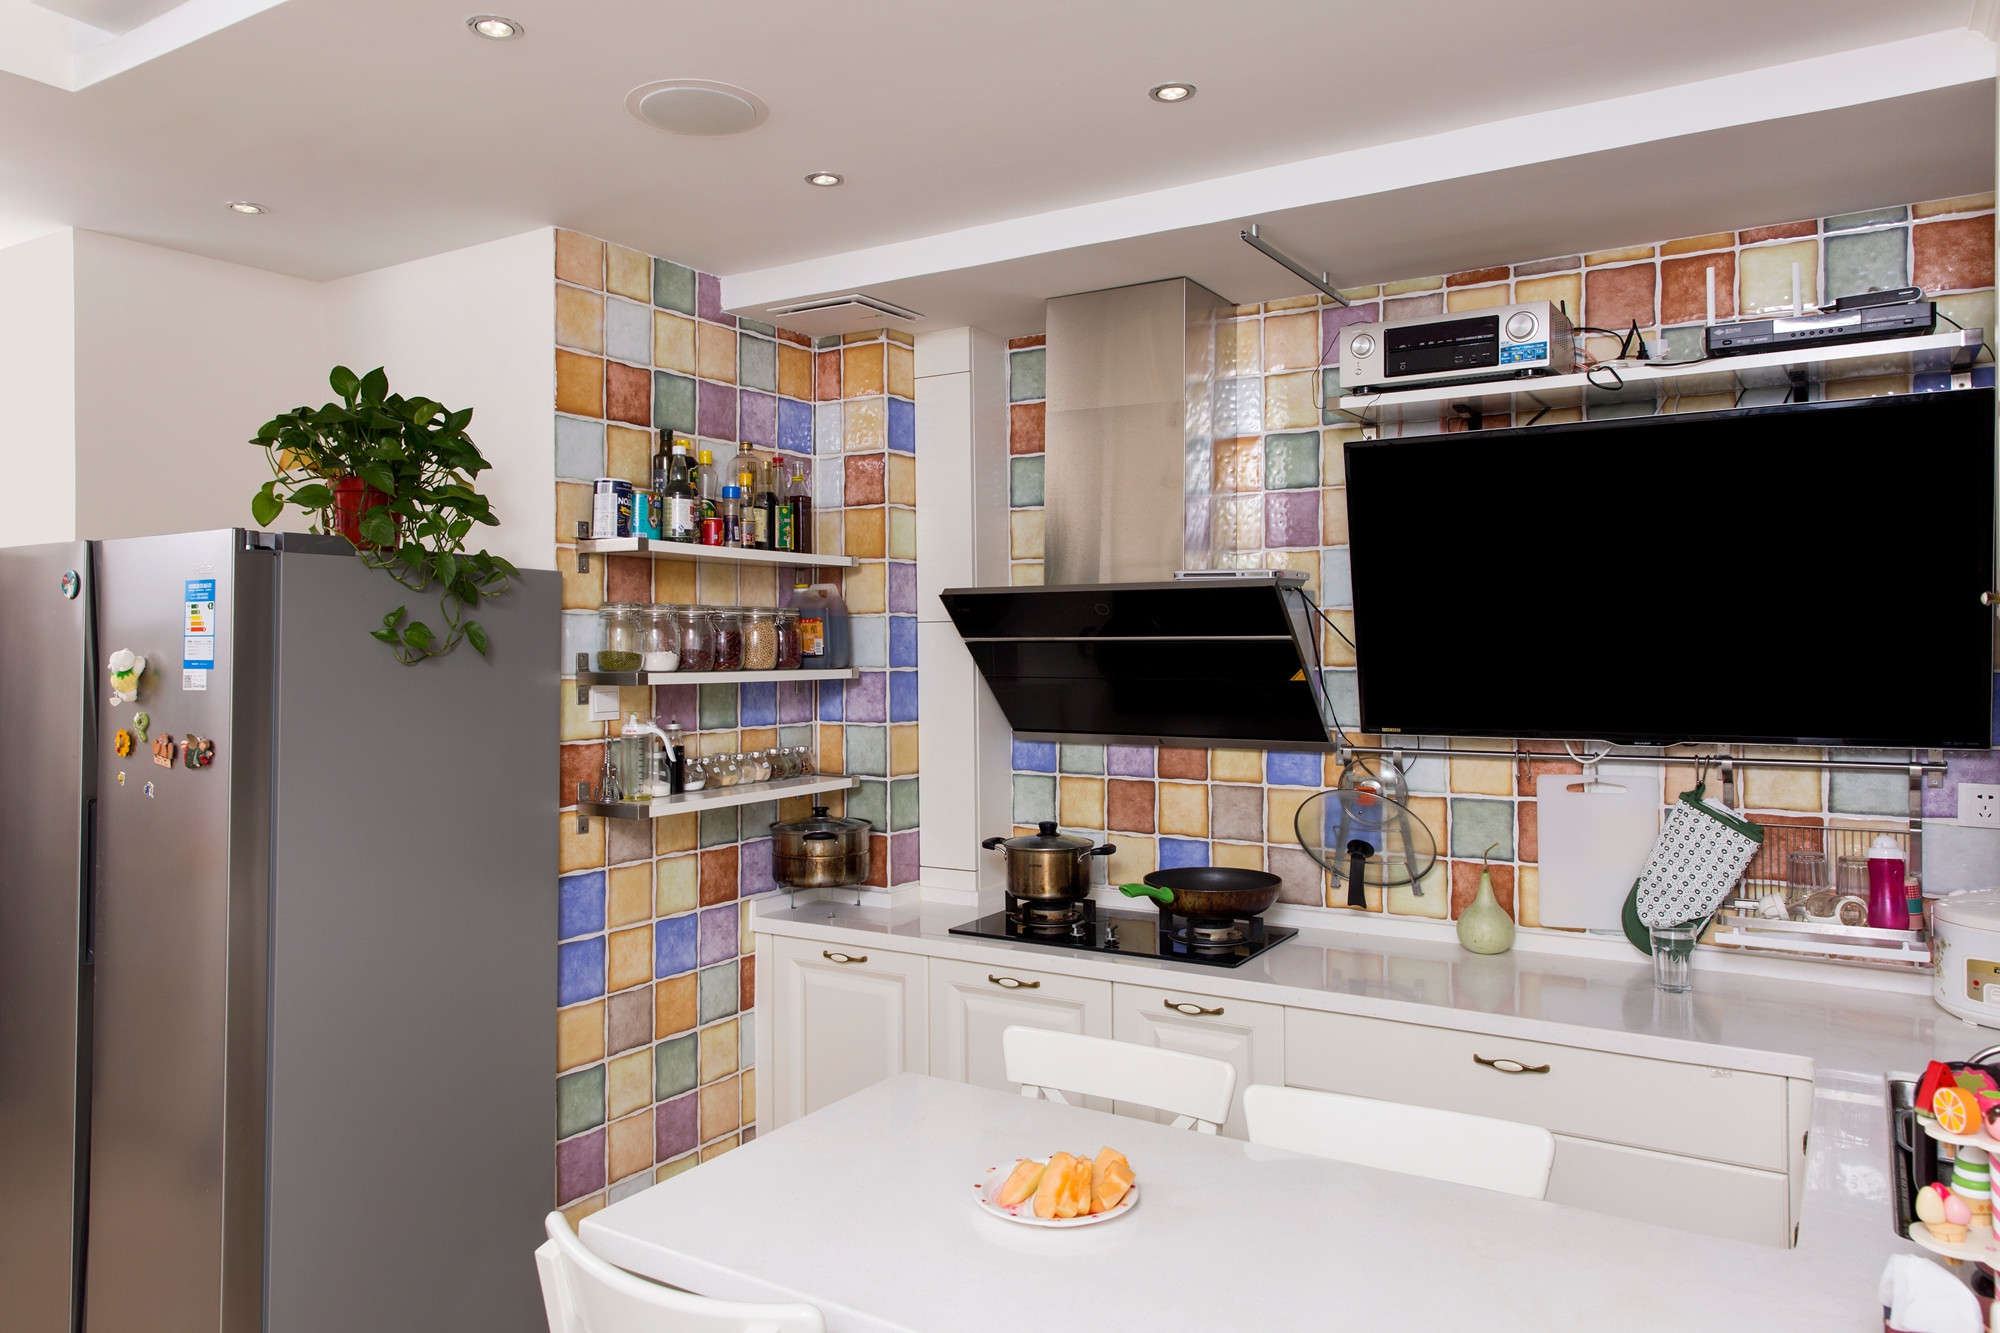 二居室现代美式家厨房墙面设计